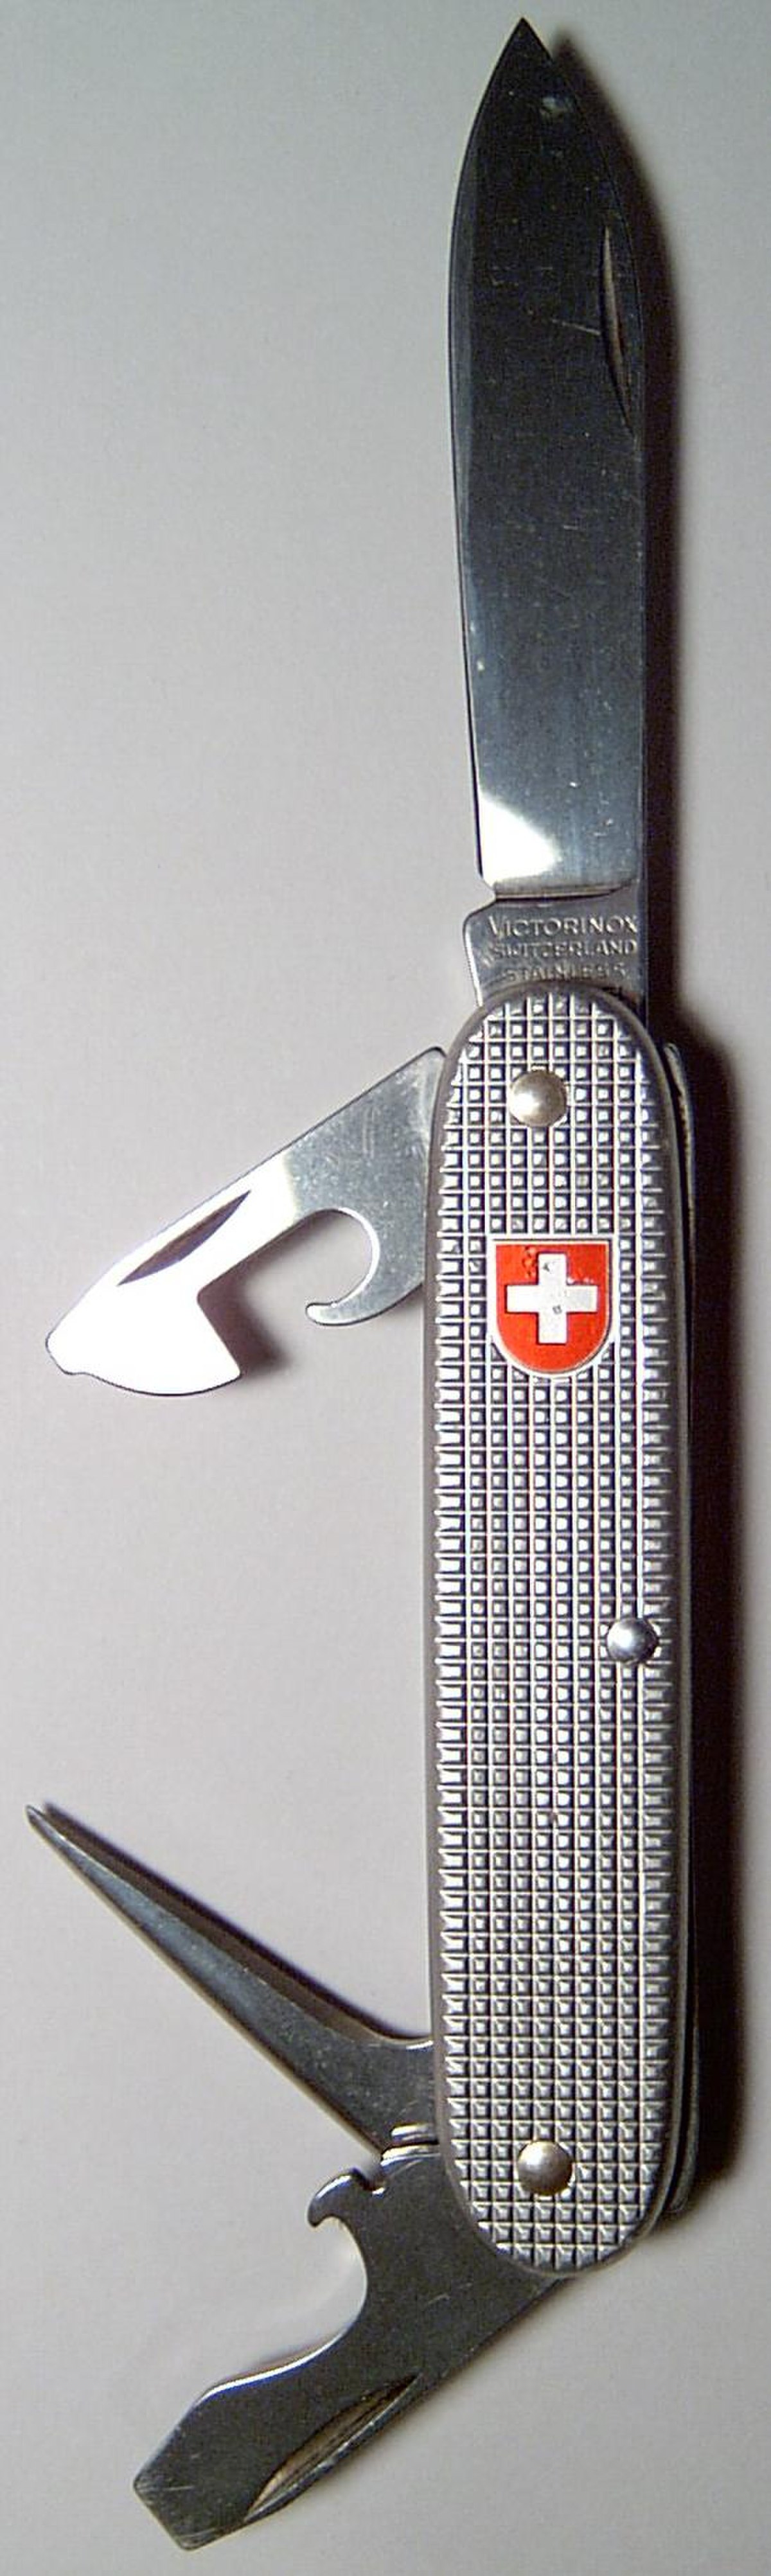 Couteau de l'armée suisse de marque Victorinox.